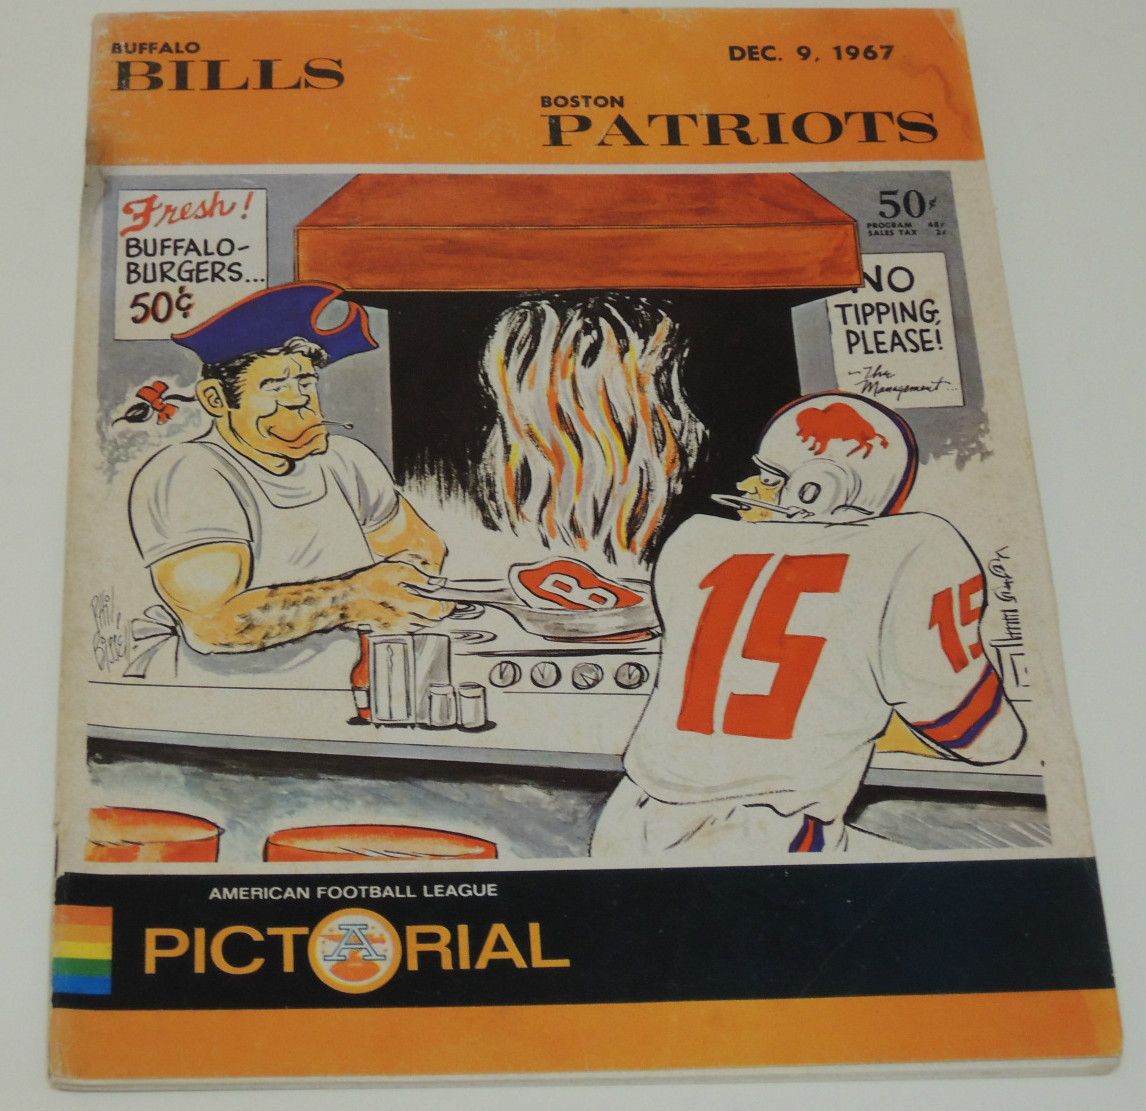   Buffalo Bills vs Boston Patriots Original AFL Football Program